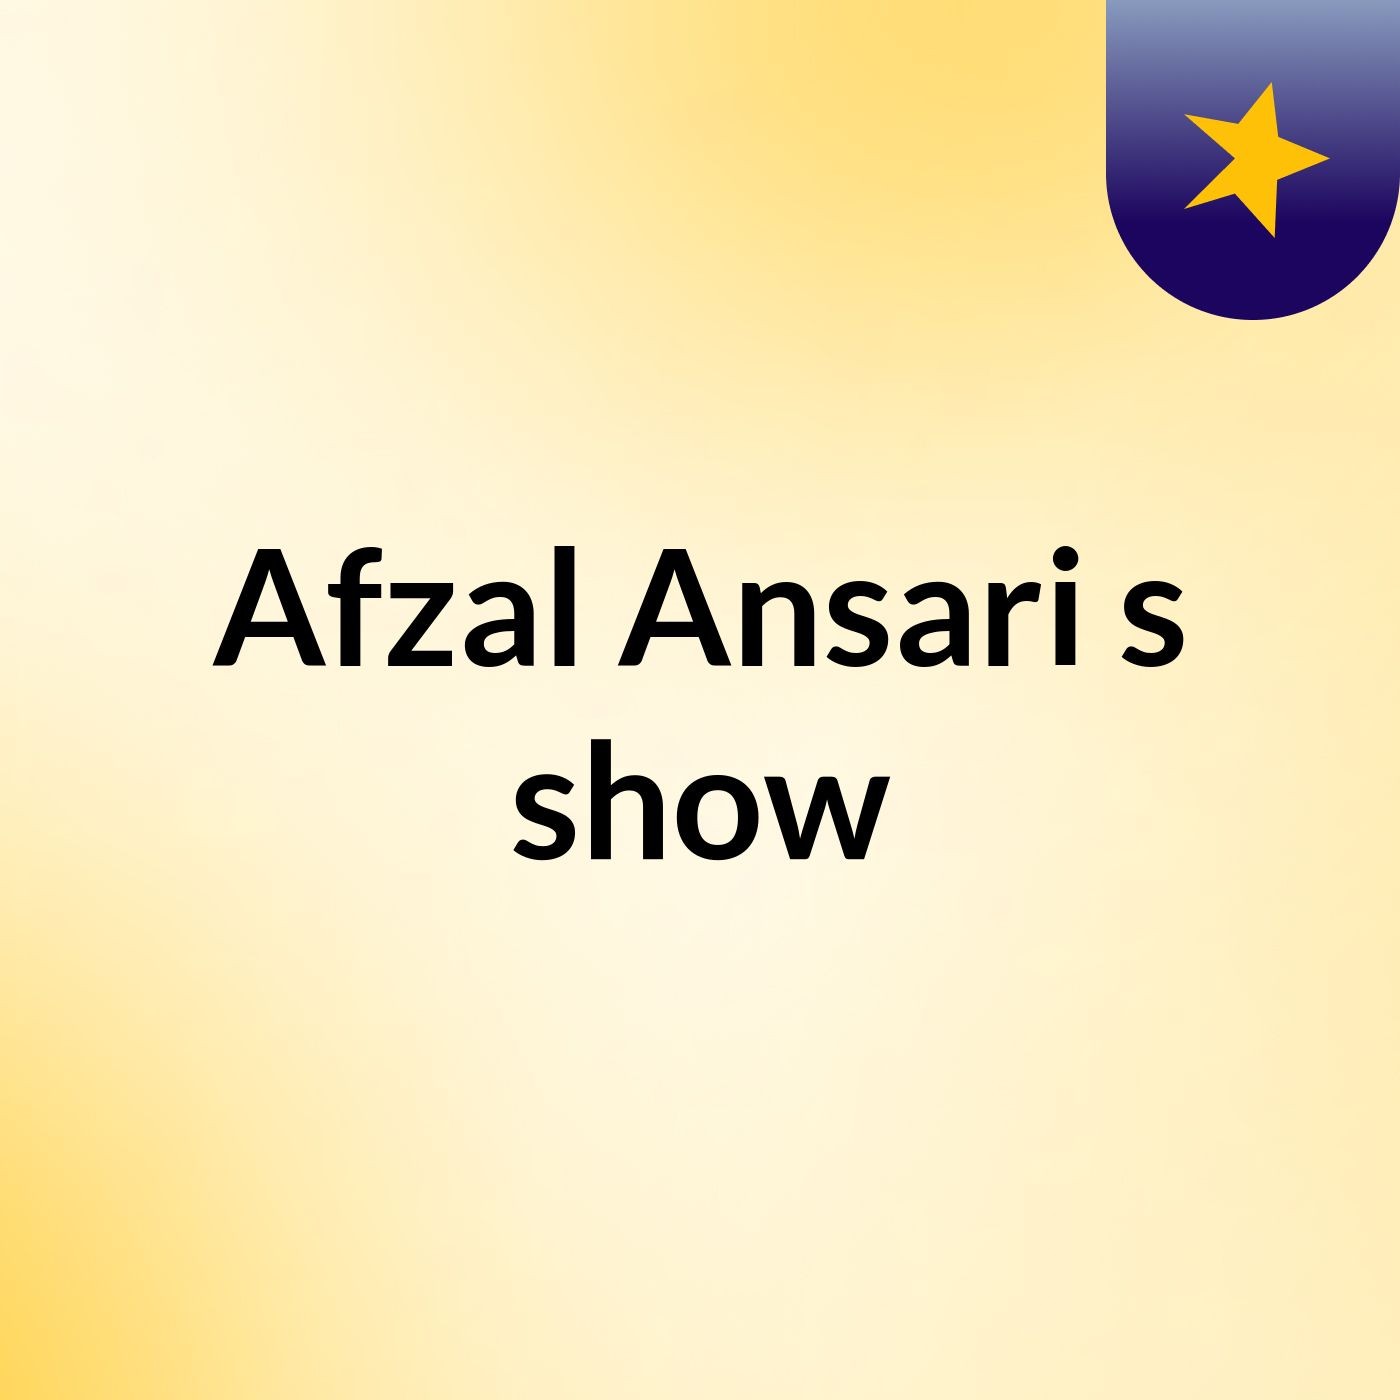 Afzal Ansari's show